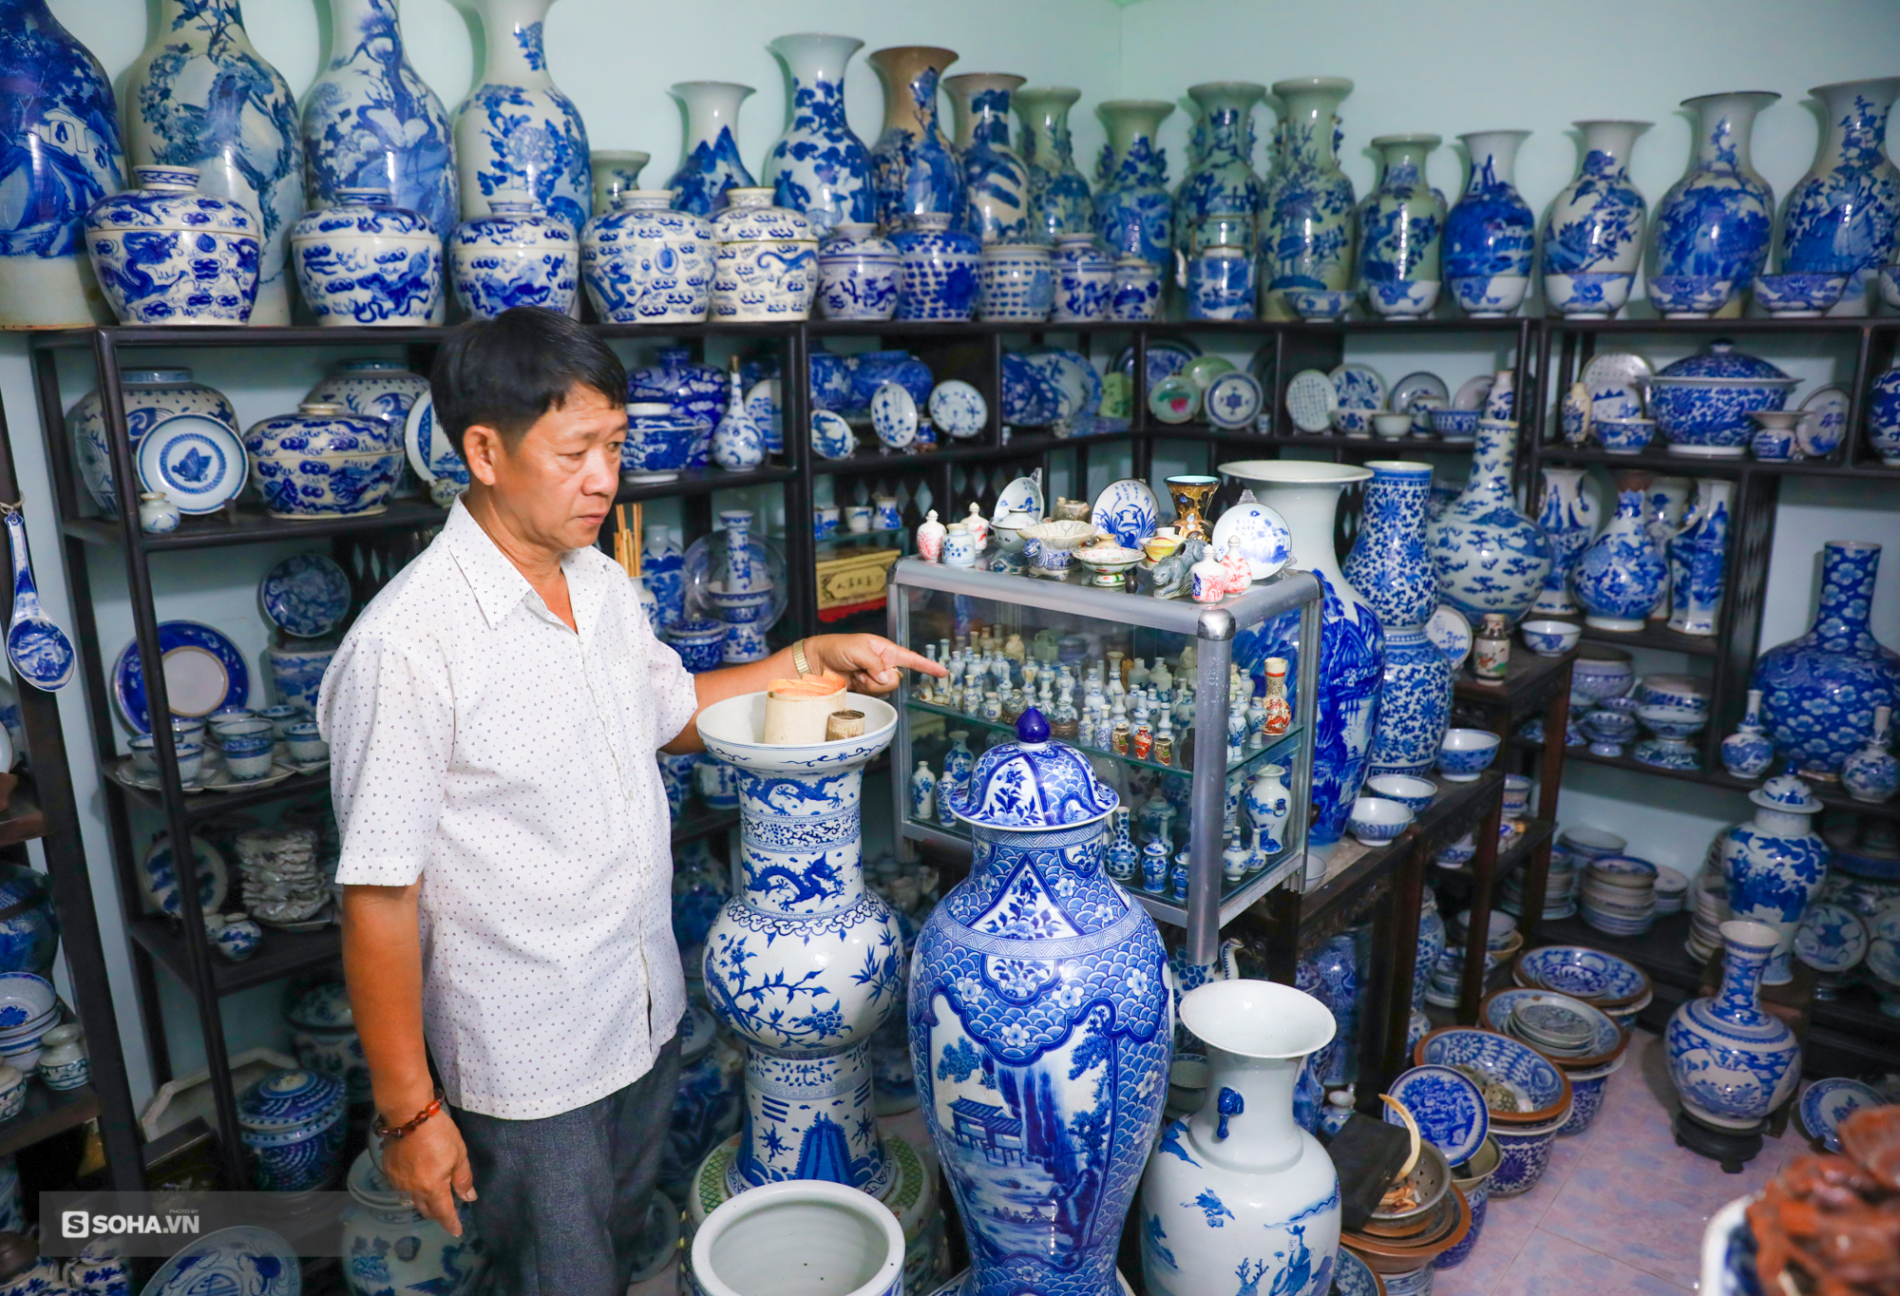 ‘Hoa mắt’ với bộ sưu tập gốm sứ lớn nhất Đông Dương, có món lên tới cả triệu USD - Ảnh 7.